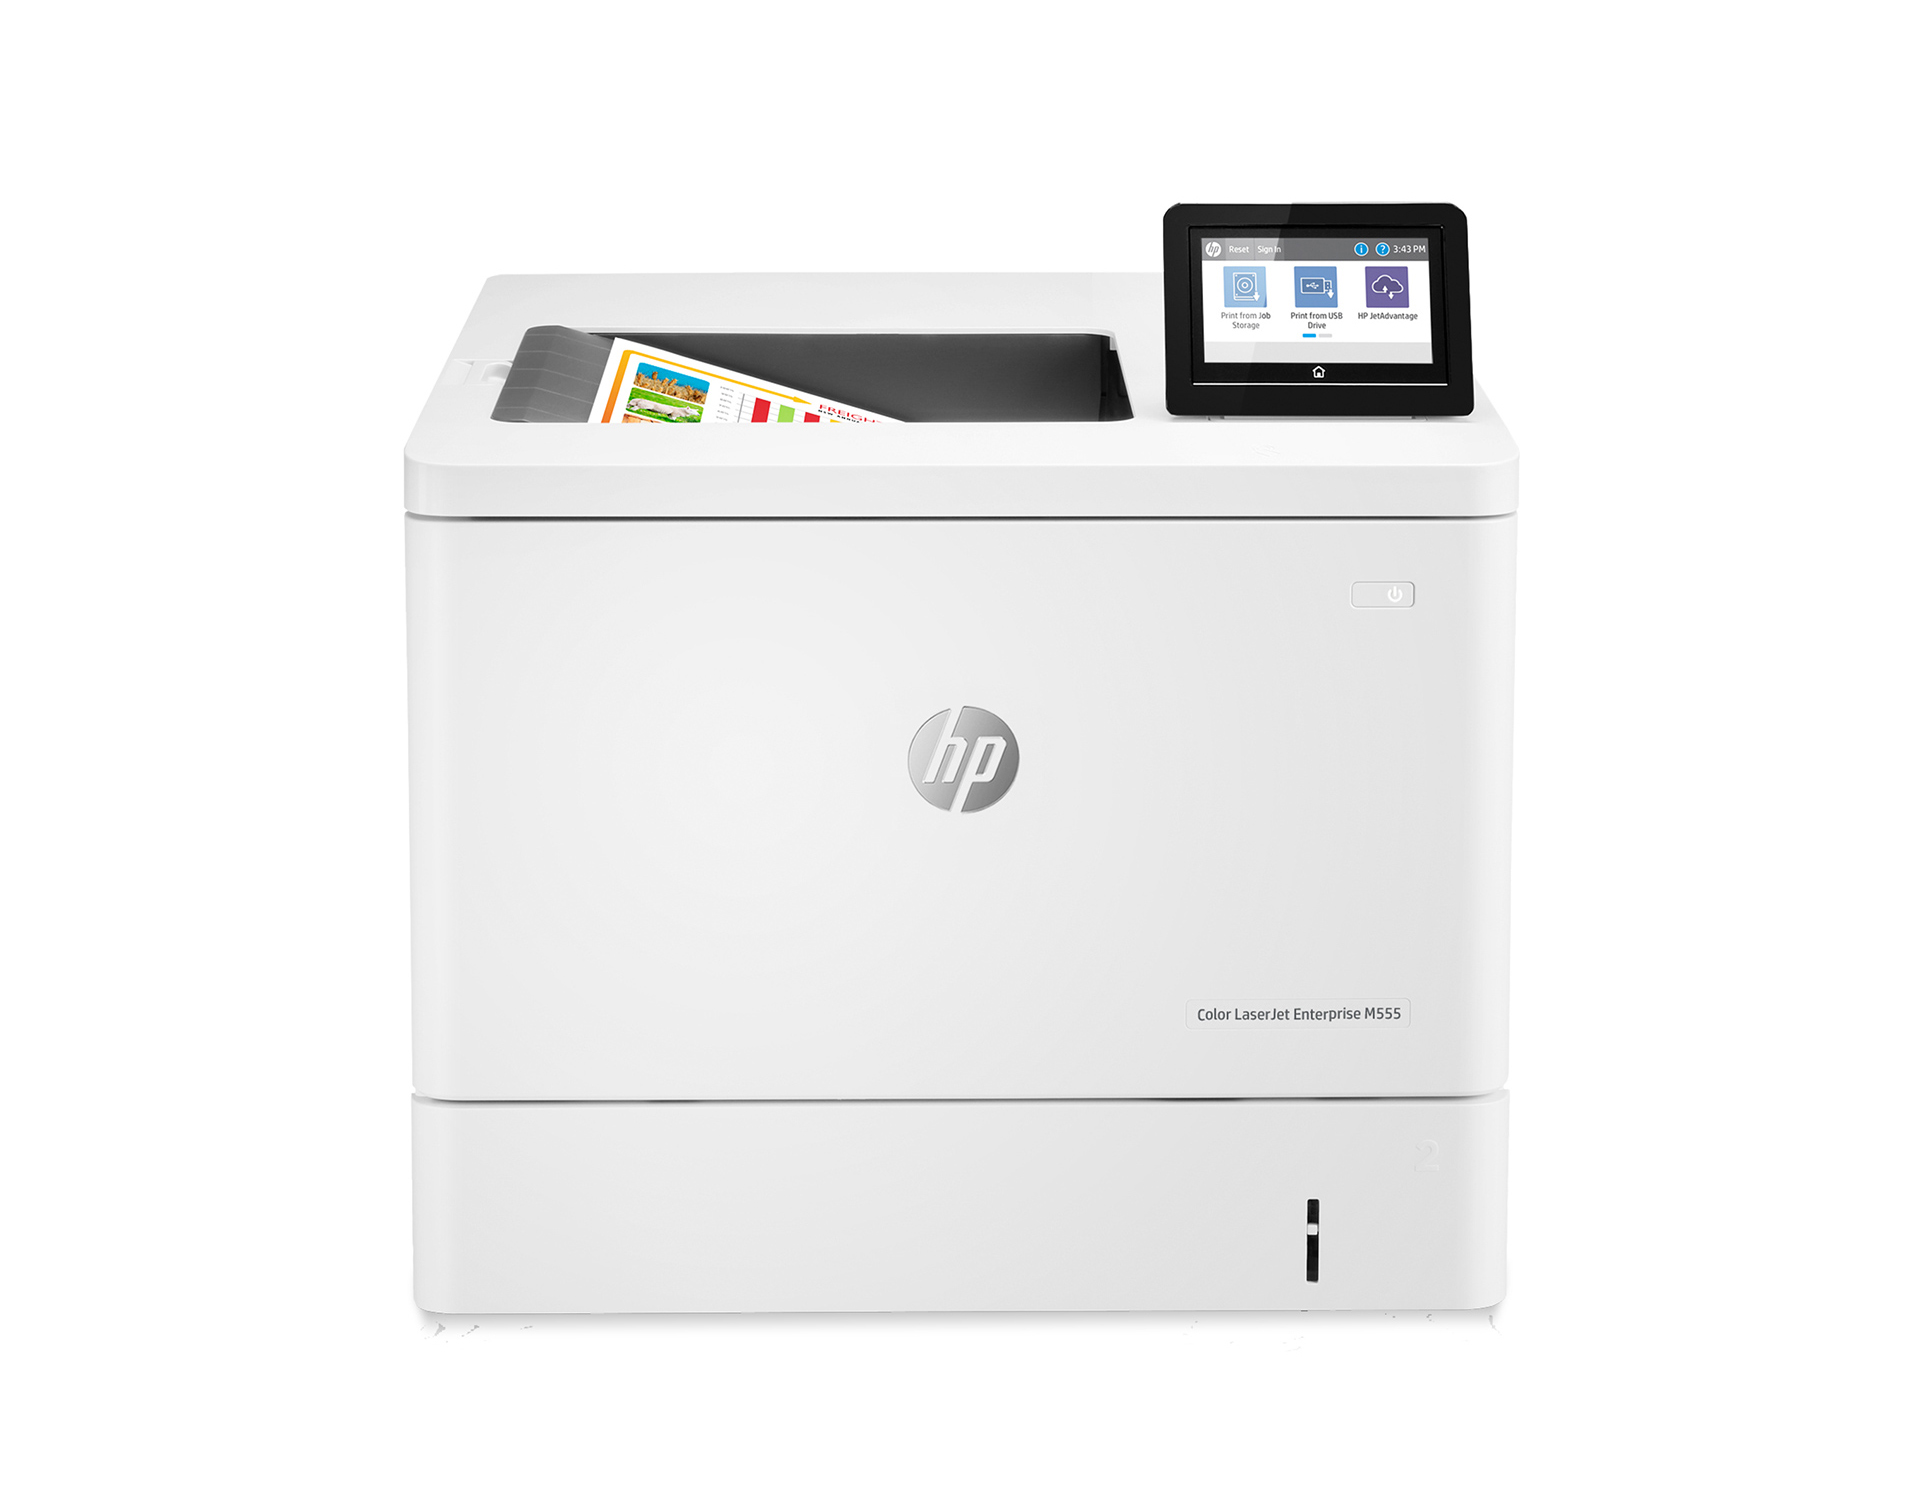 HP LaserJet Enterprise Color M555dn